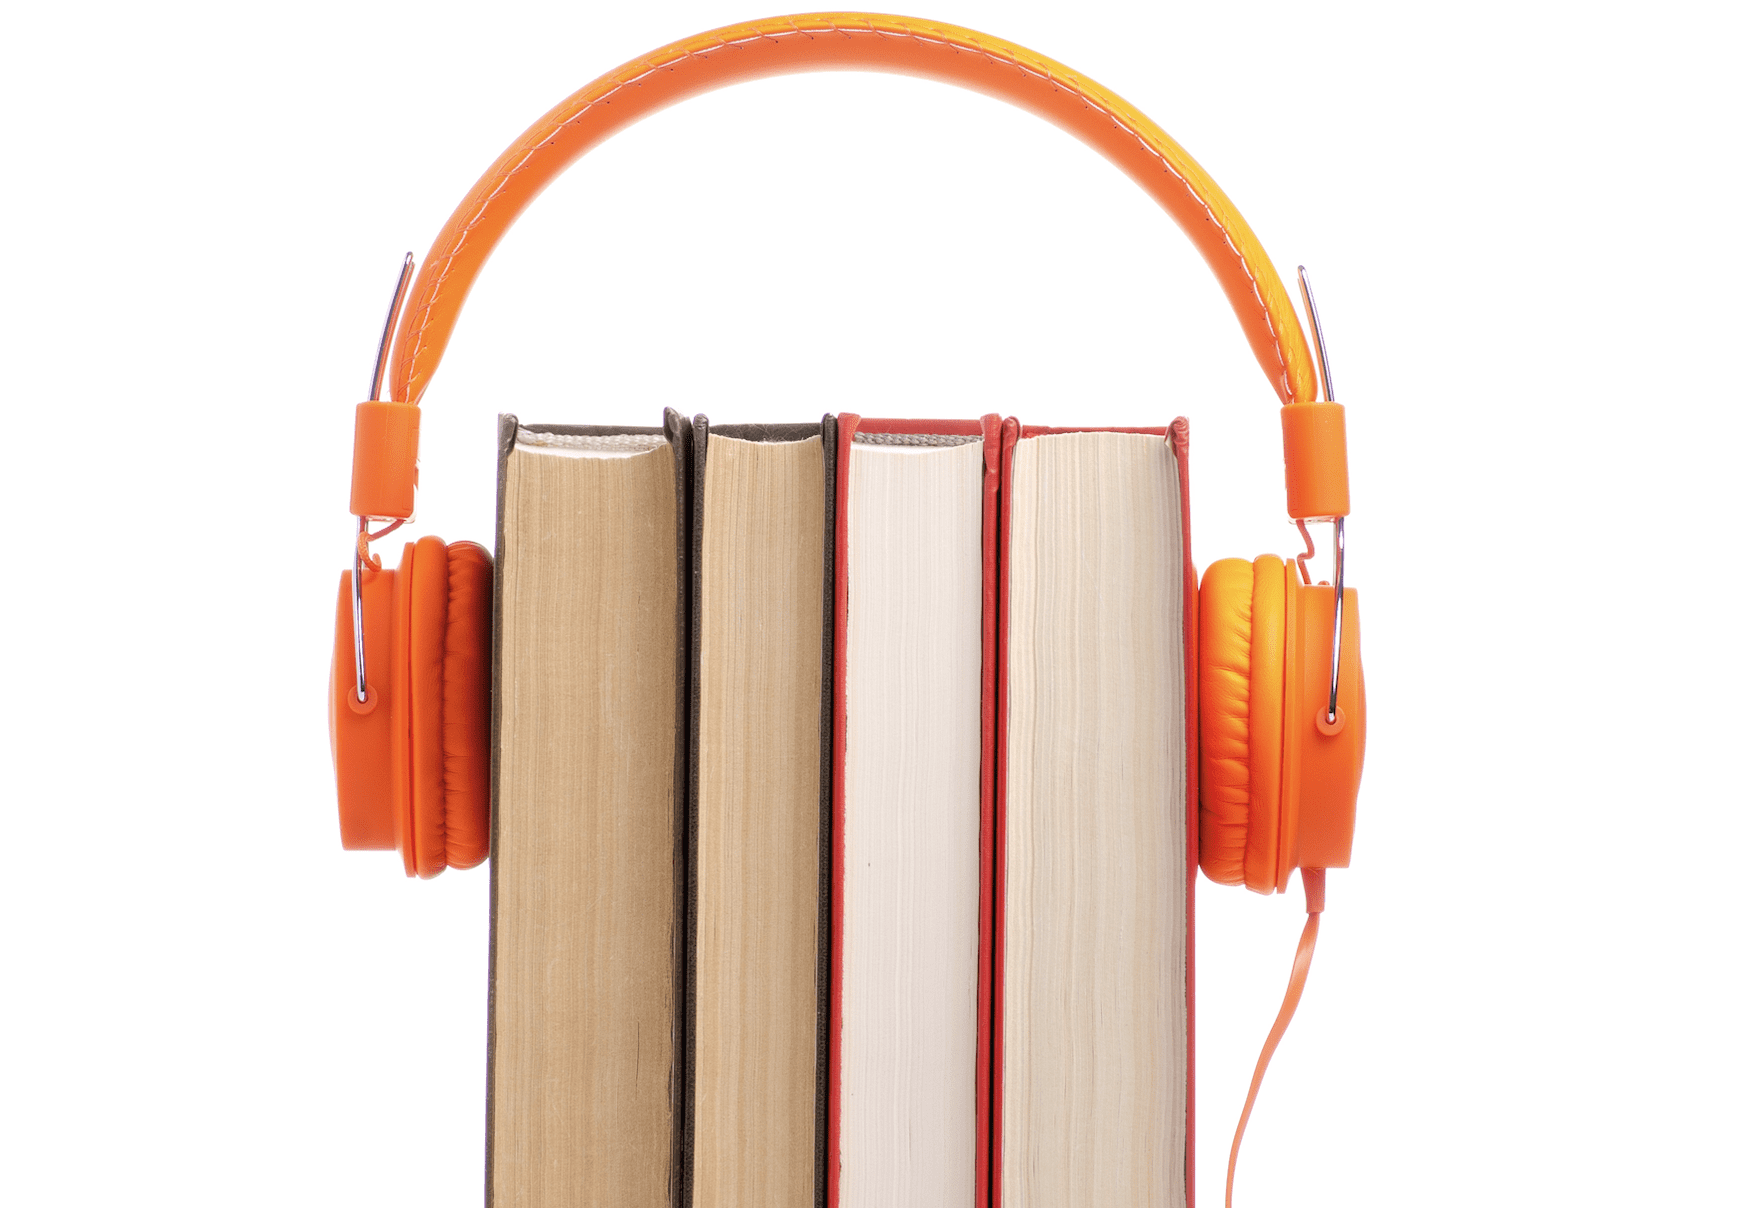 Bilden visar ett par orange hörlurar som sitter om en packe böcker, som på ett huvud